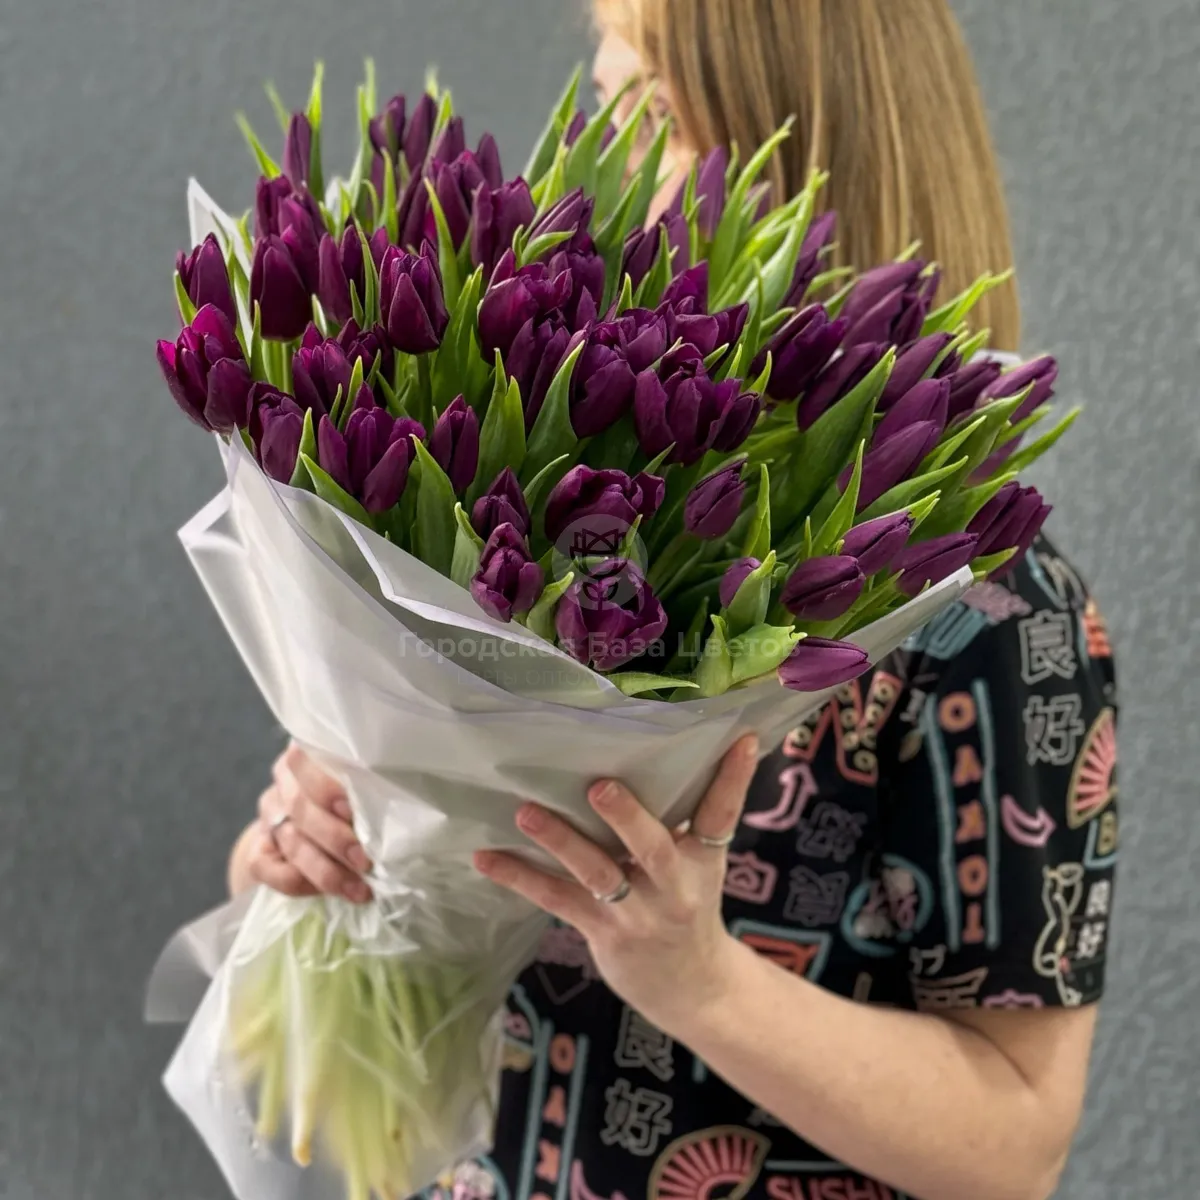 69 бордово-фиолетовых тюльпанов